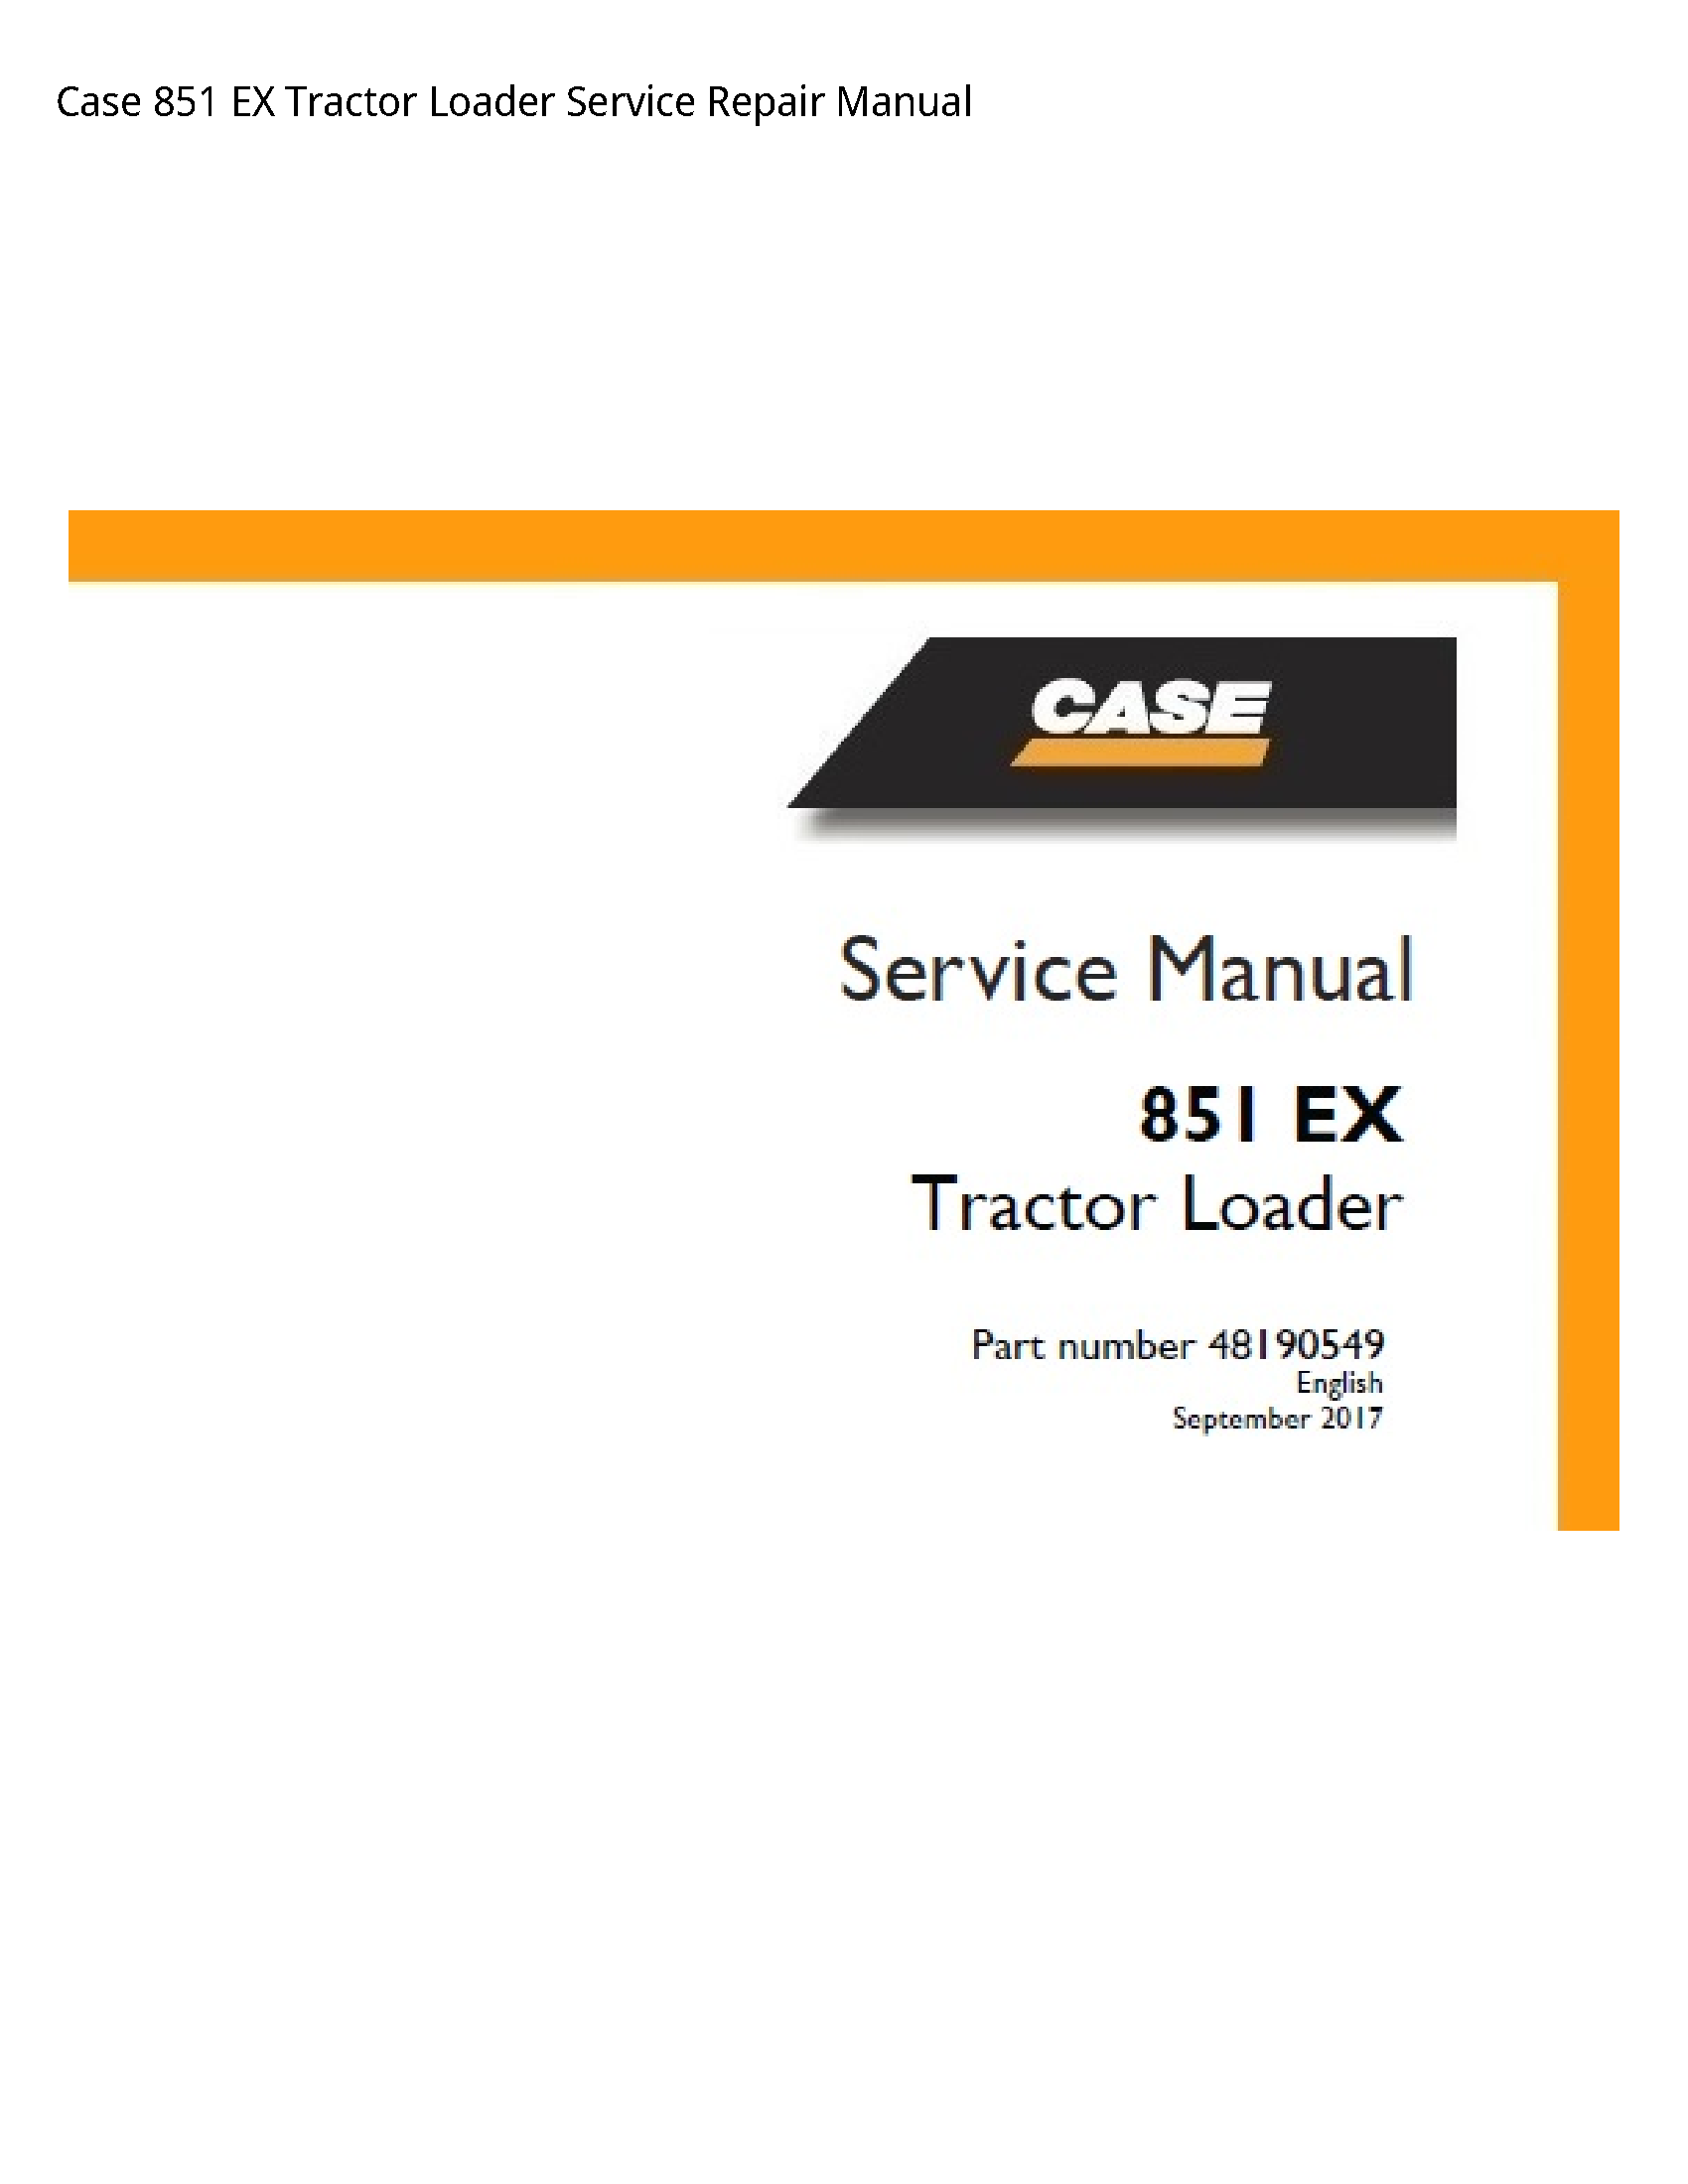 Case/Case IH 851 EX Tractor Loader manual